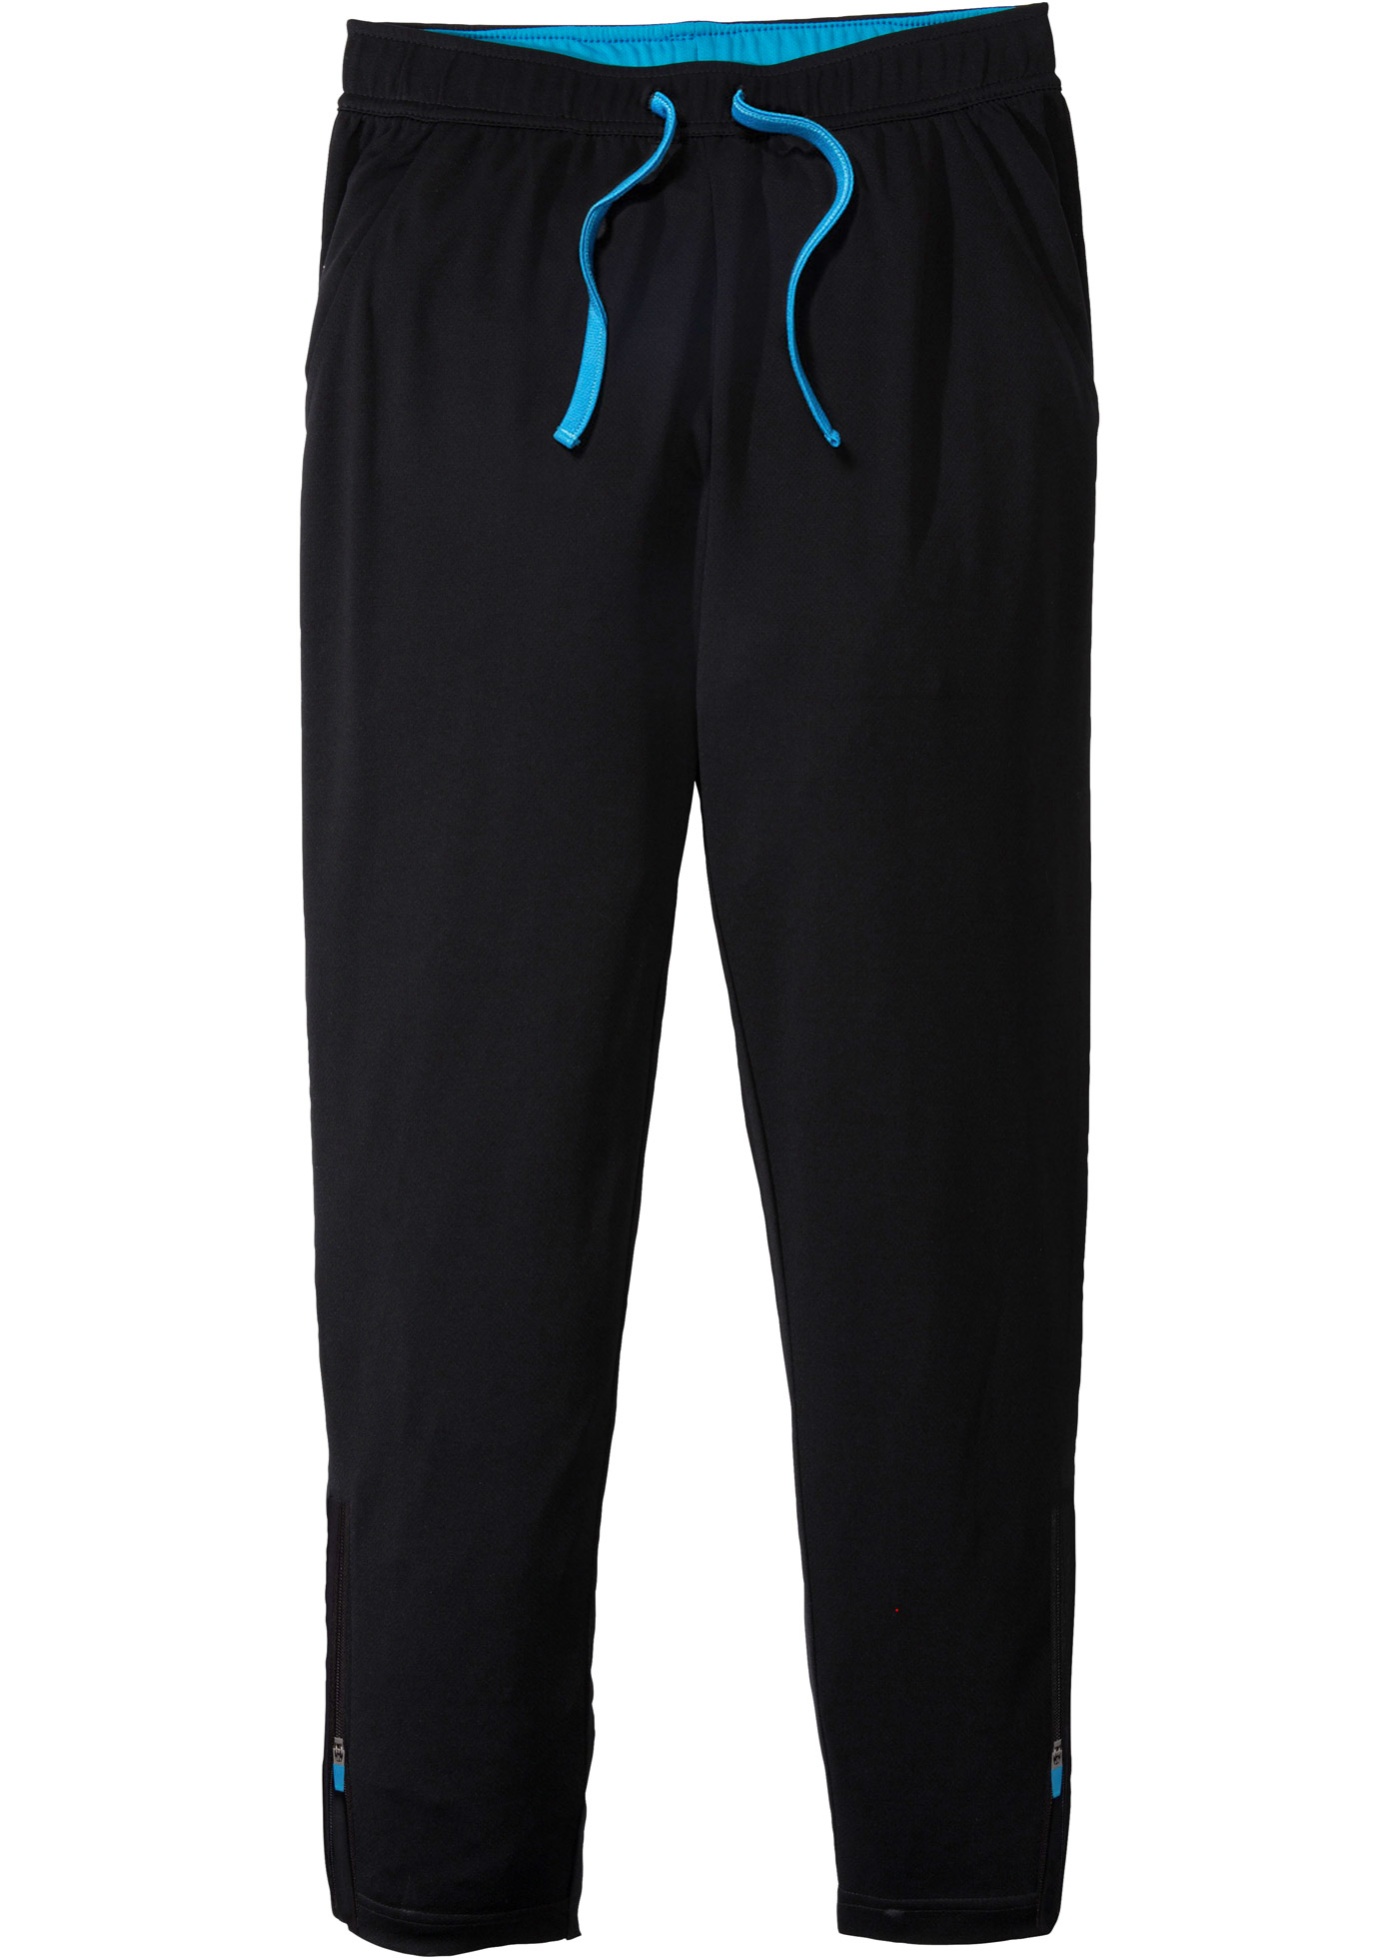 Pantaloncini per sport traspiranti ad asciugatura rapida (Nero) - bpc bonprix collection